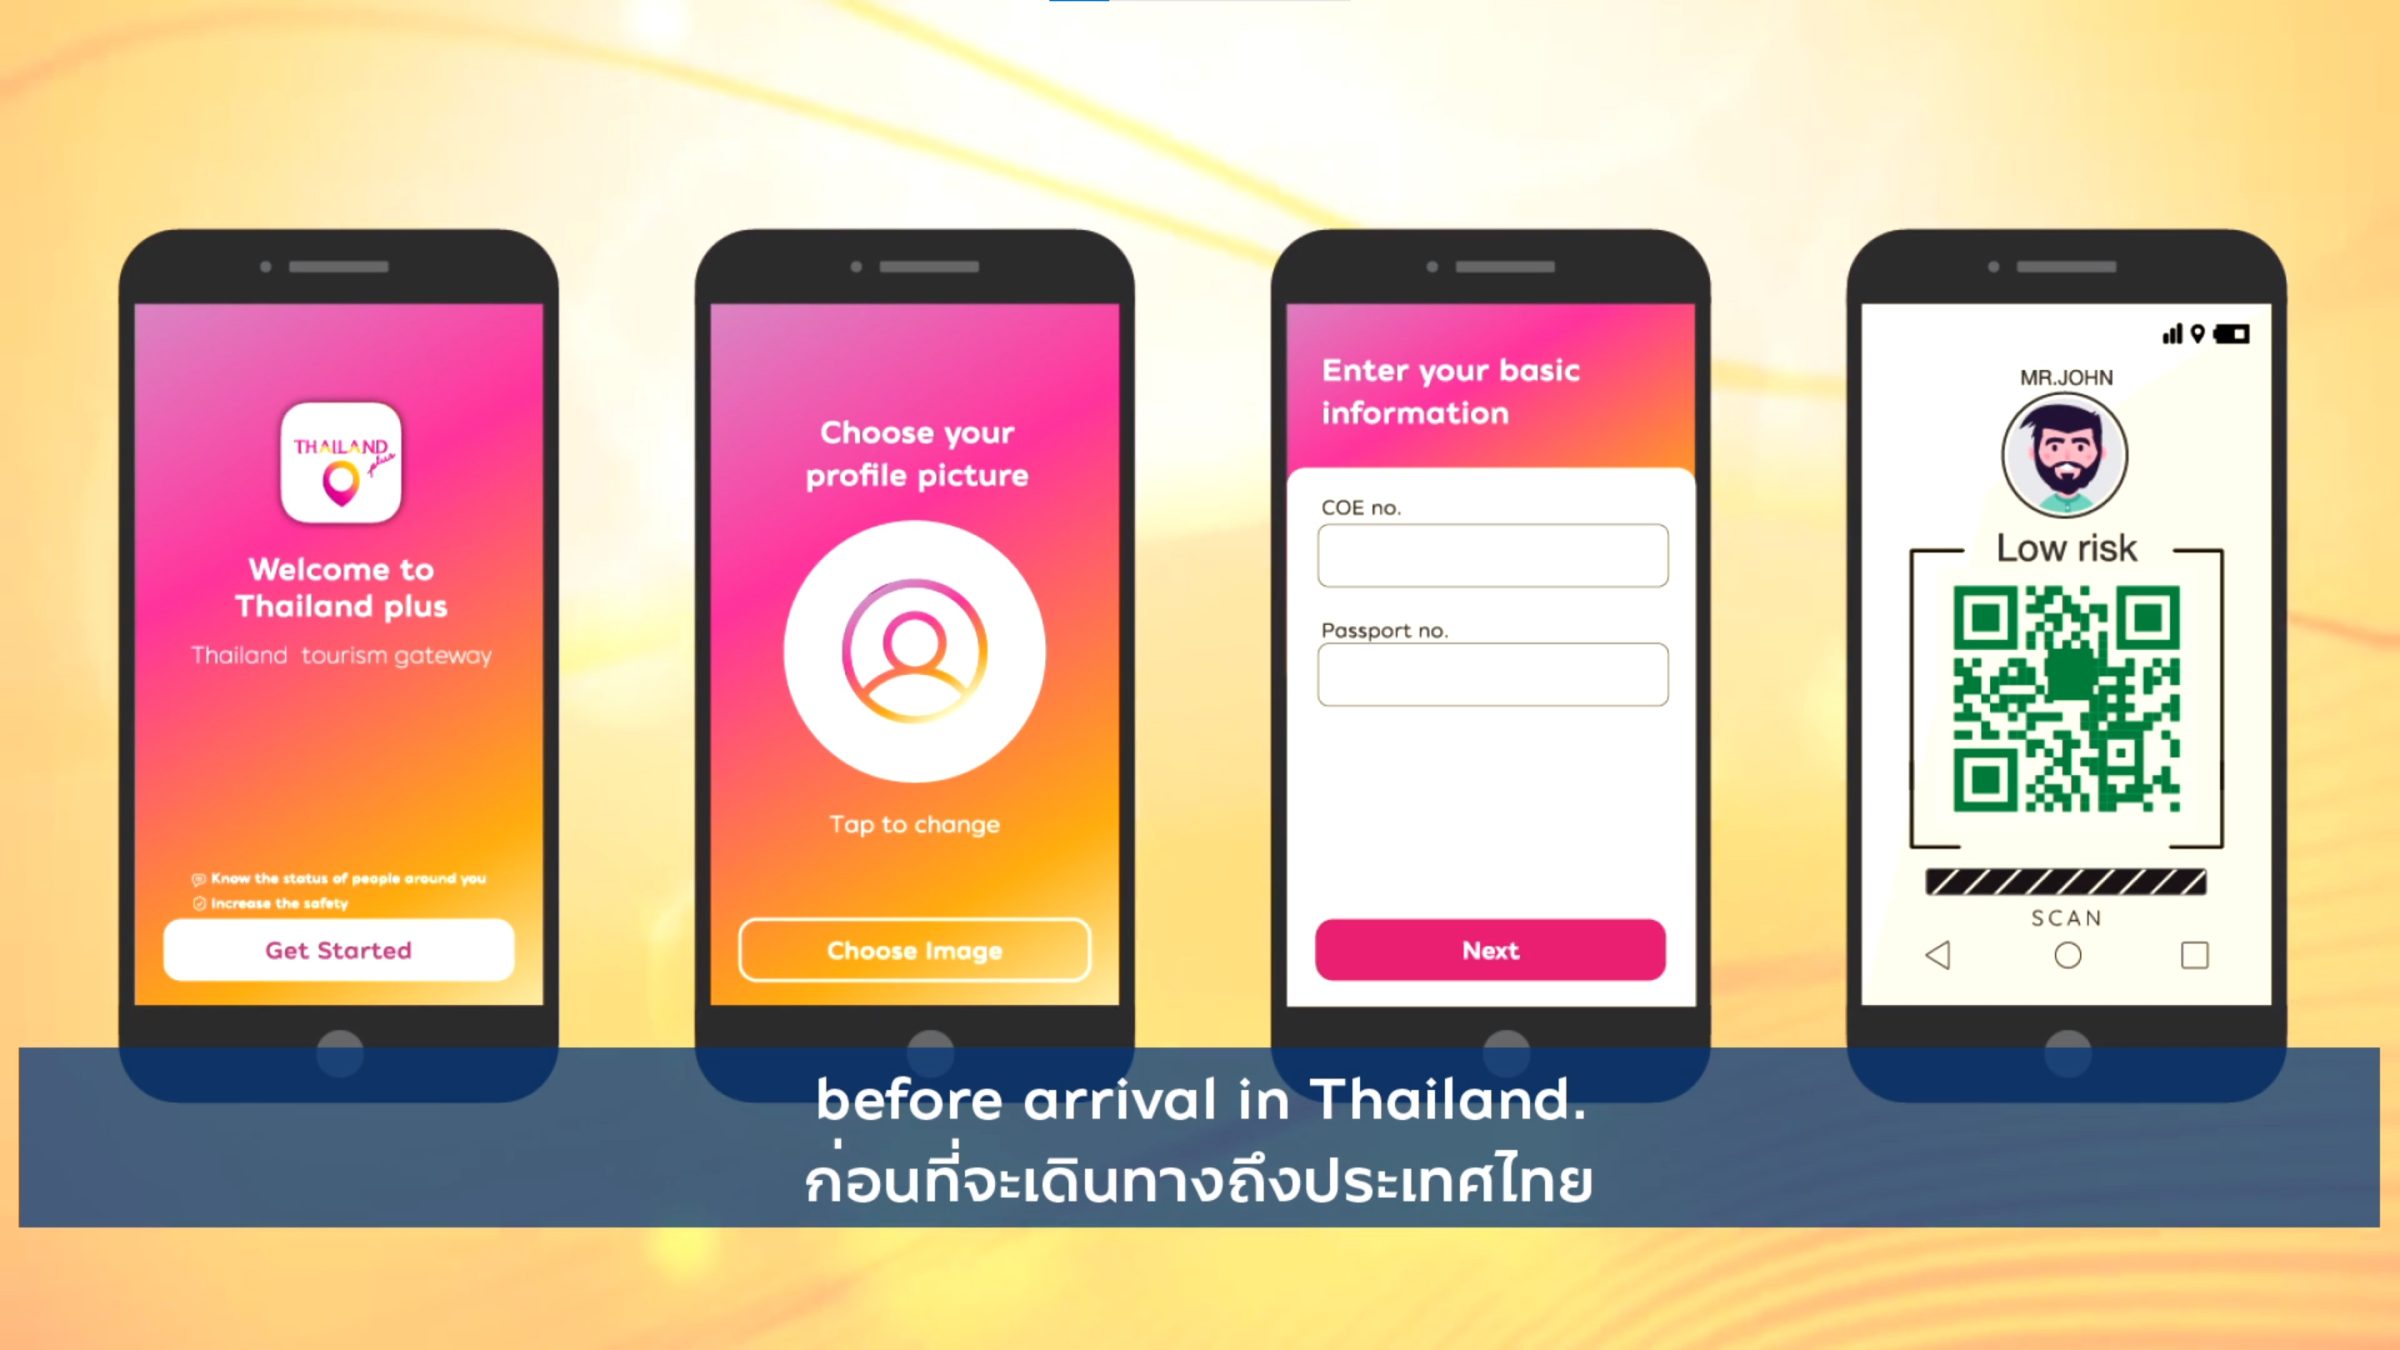 thailandplus app